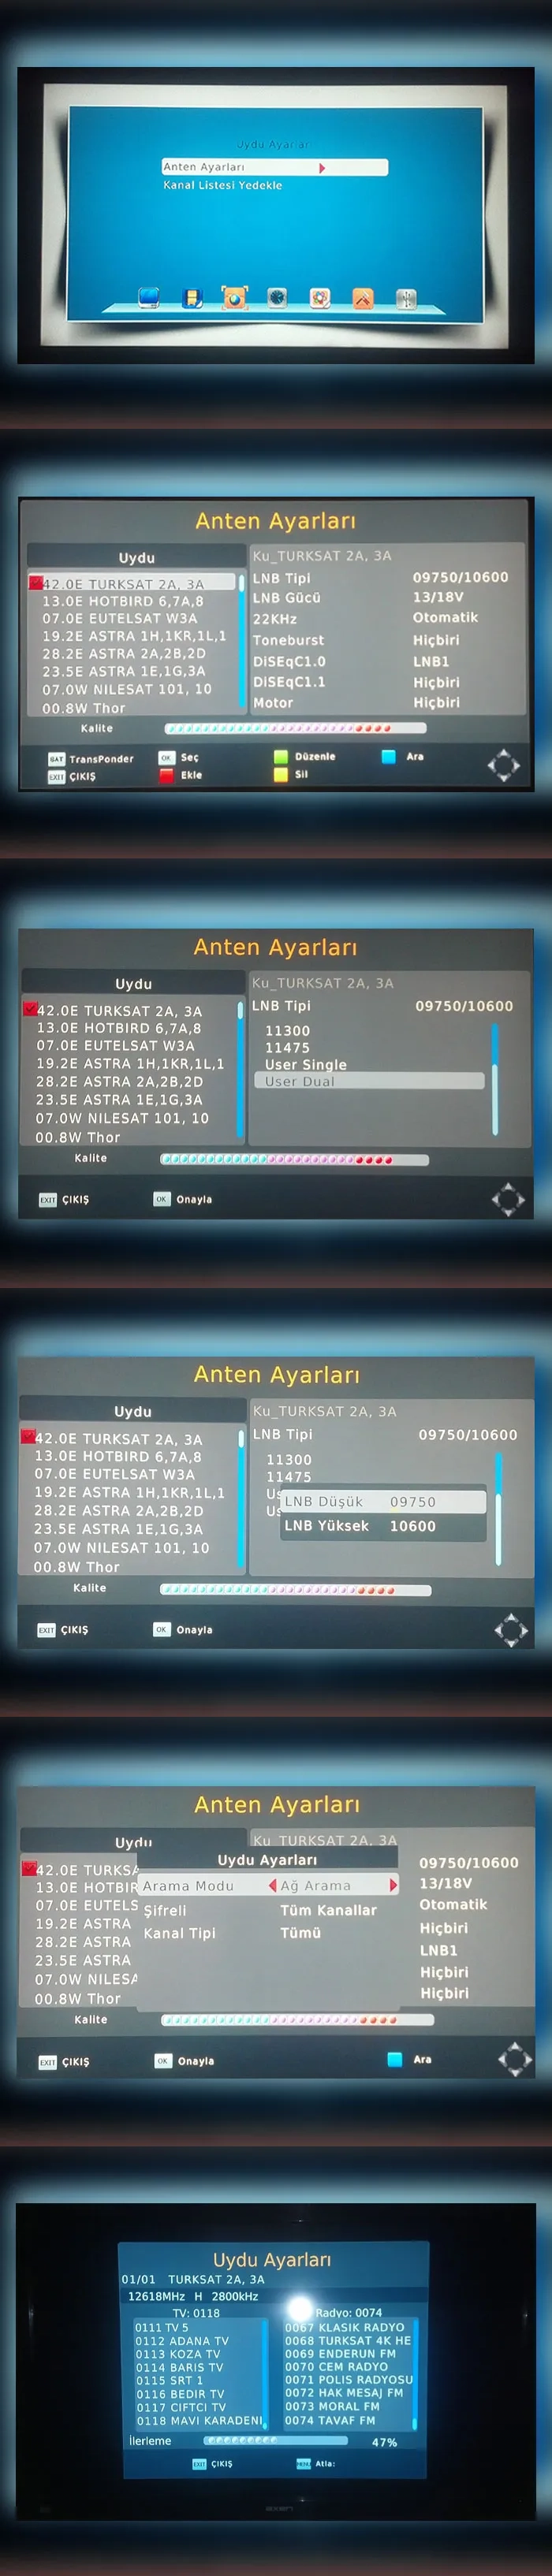 Axen Ax-12050 uydu alıcısının Türksat 4A frekans ayarlanmasını resimli olarak aşağıdaki adımları takip ederek kolaylıkla yapabilirsiniz.